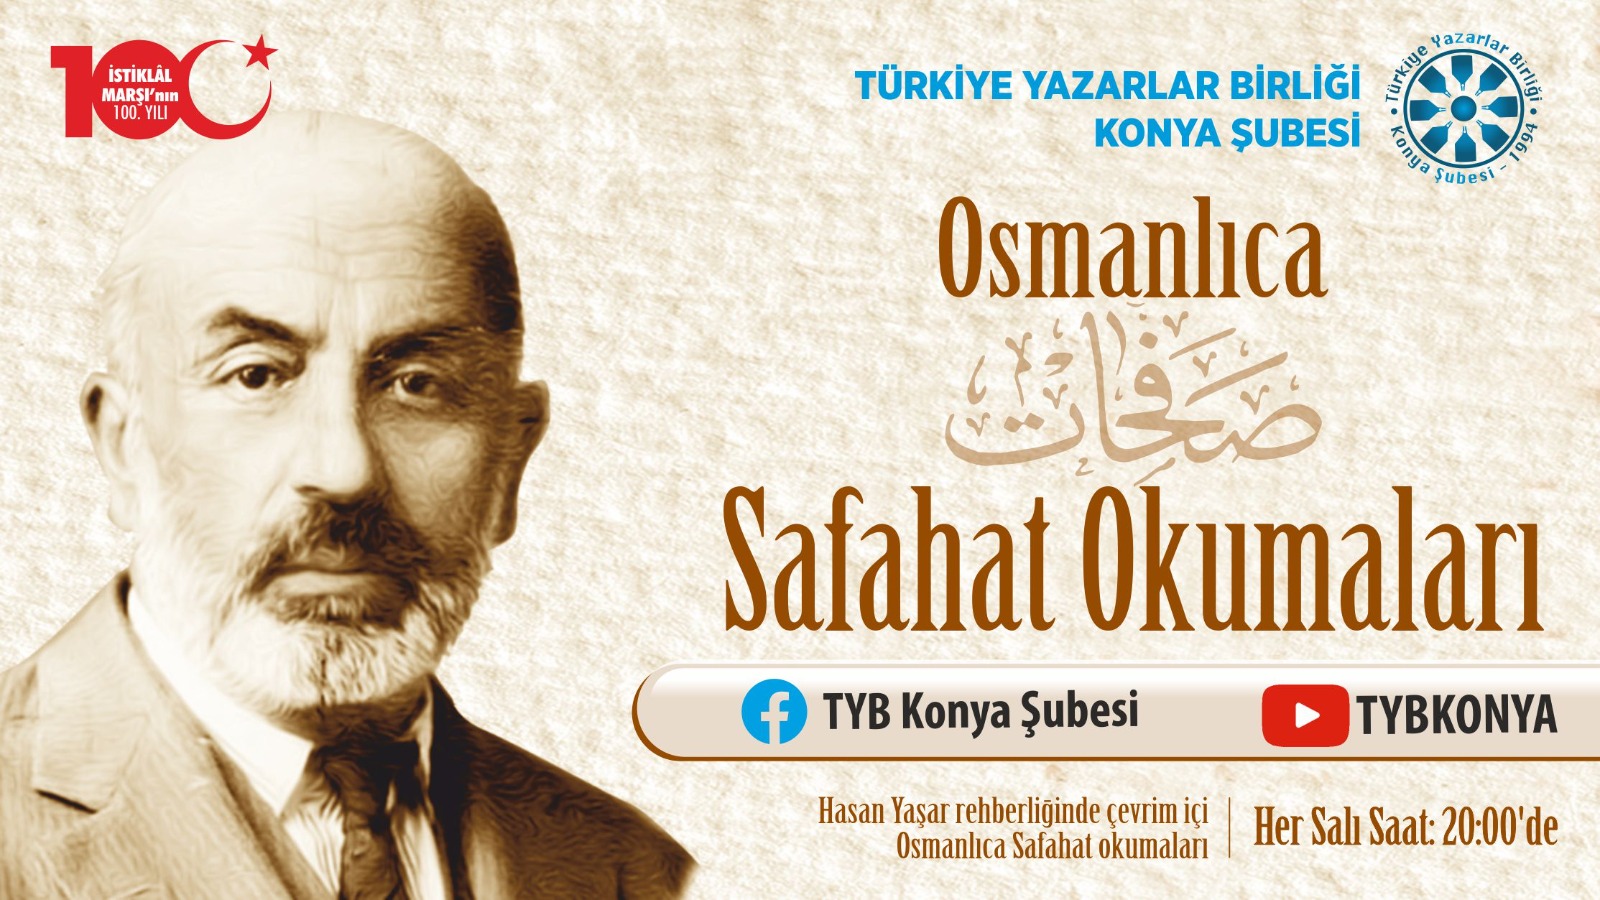 Türkiye Yazarlar Birliği Konya Şubesi Safahat’ın yazılış Osmanlıca okunacağı haftalık programlar dizisine başlıyor.